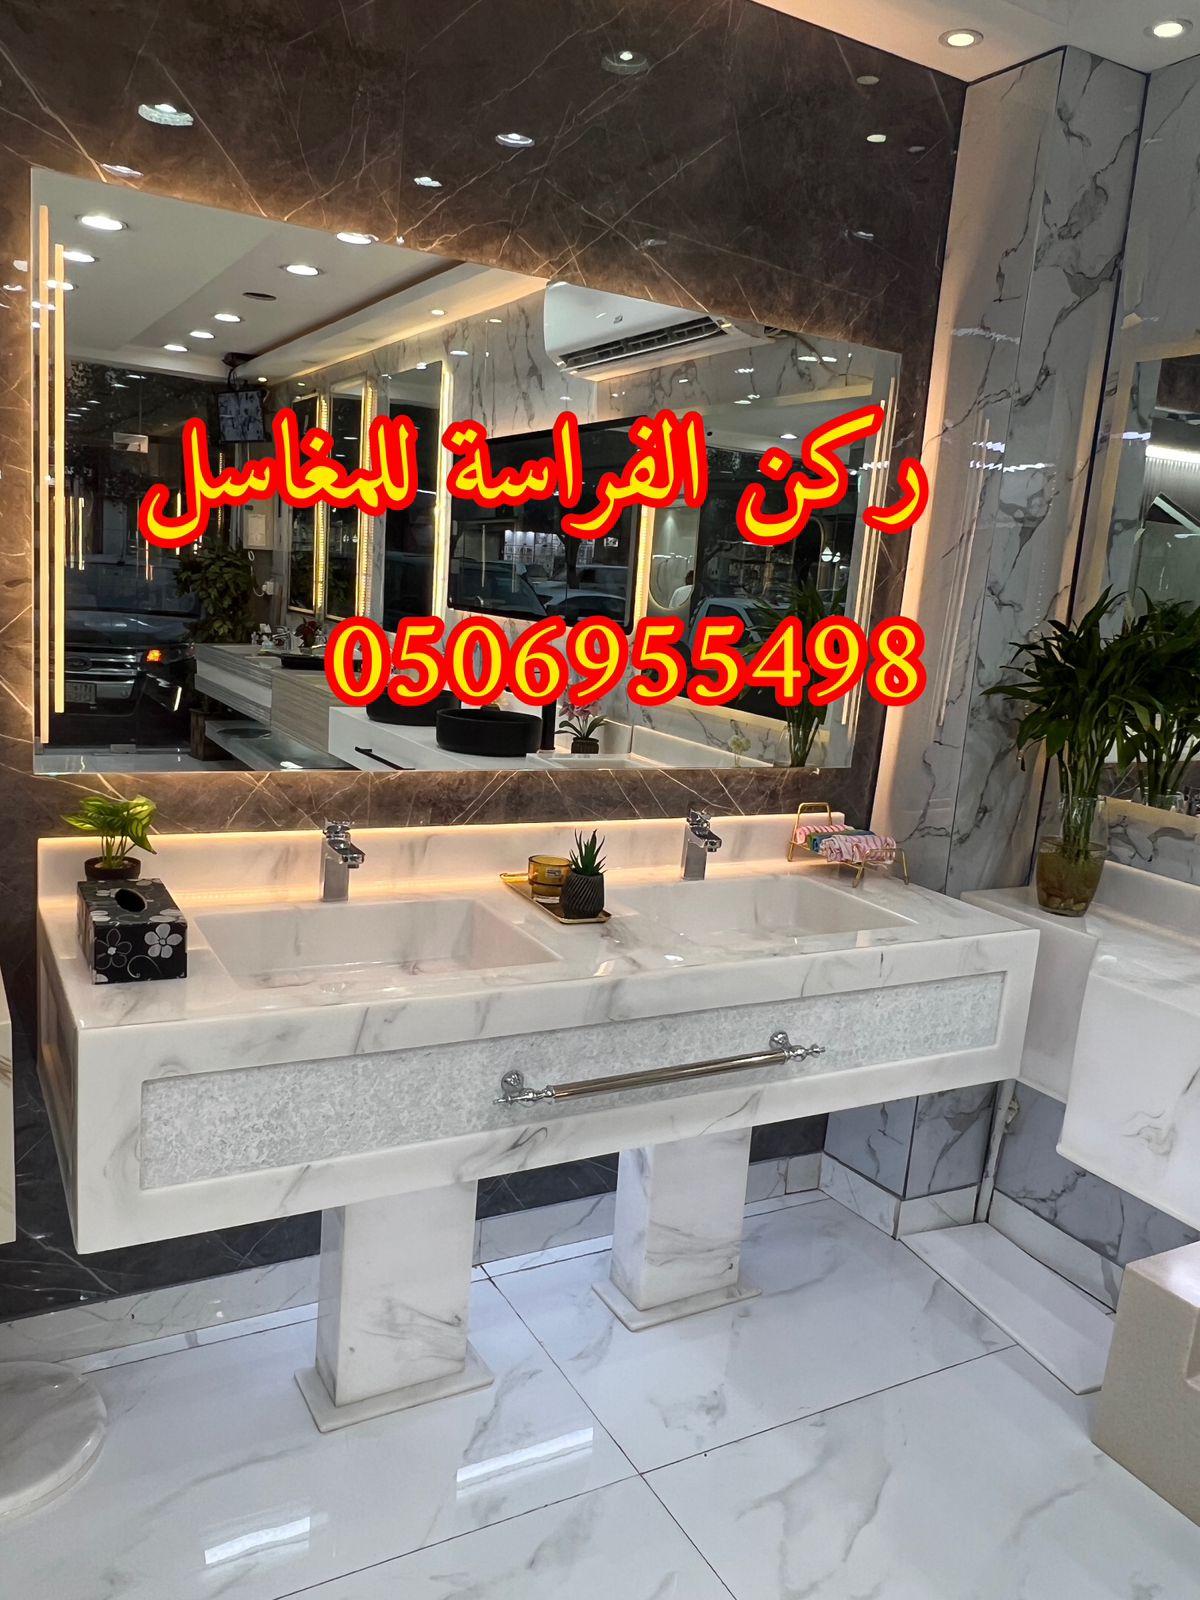 الرياض - اشكال مغاسل رخام طبيعي وصناعي في الرياض,0506955498 554703042